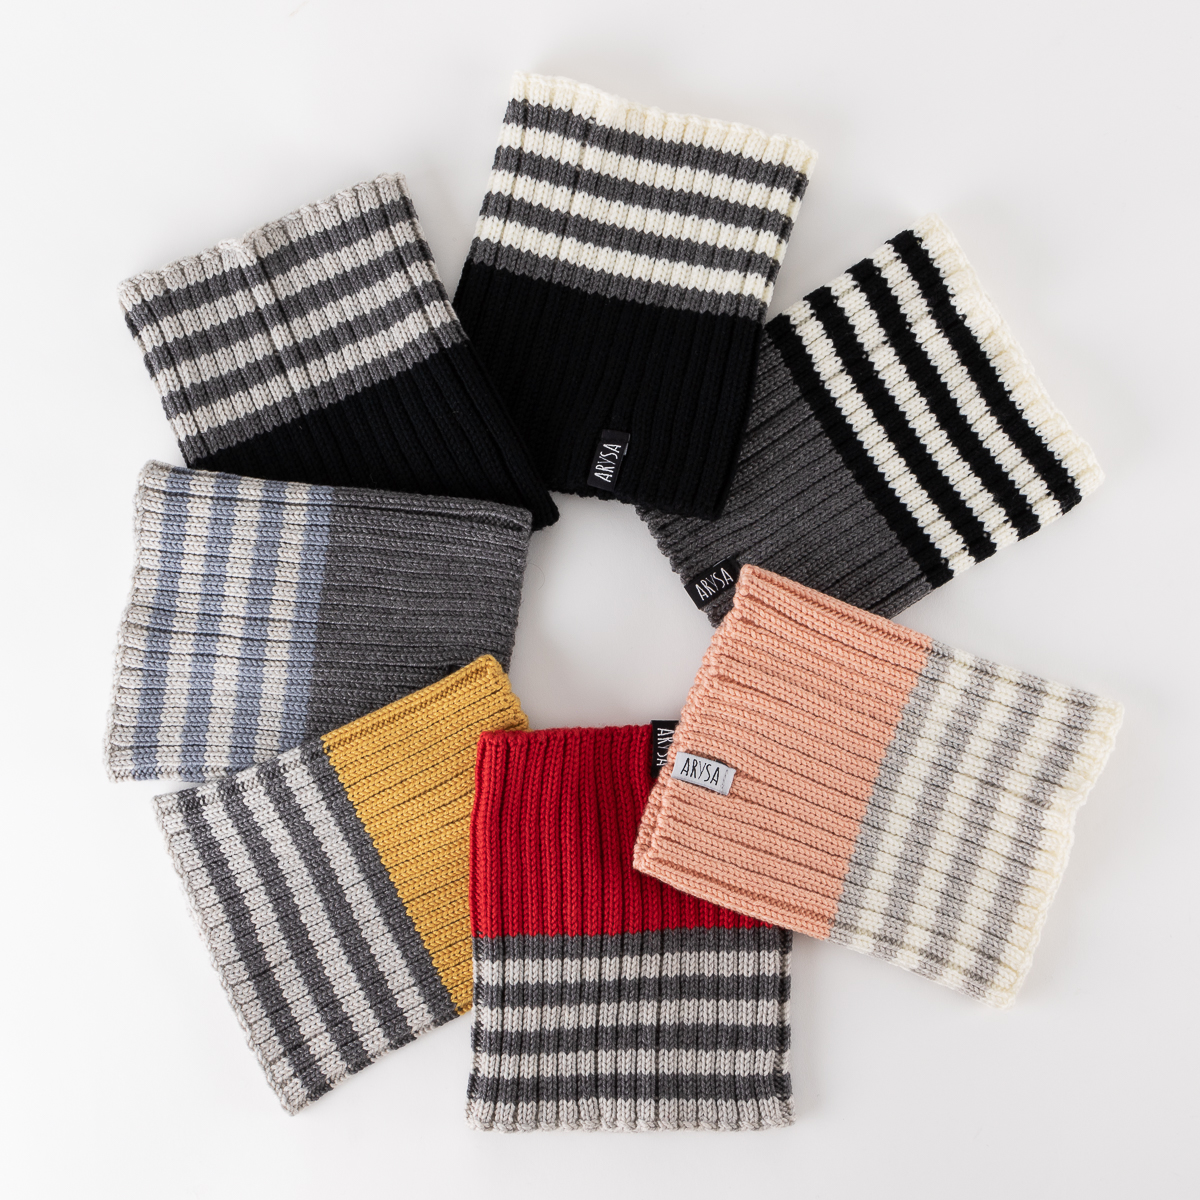 Choix de couleur pour les cache-cou en tricot de la collection 